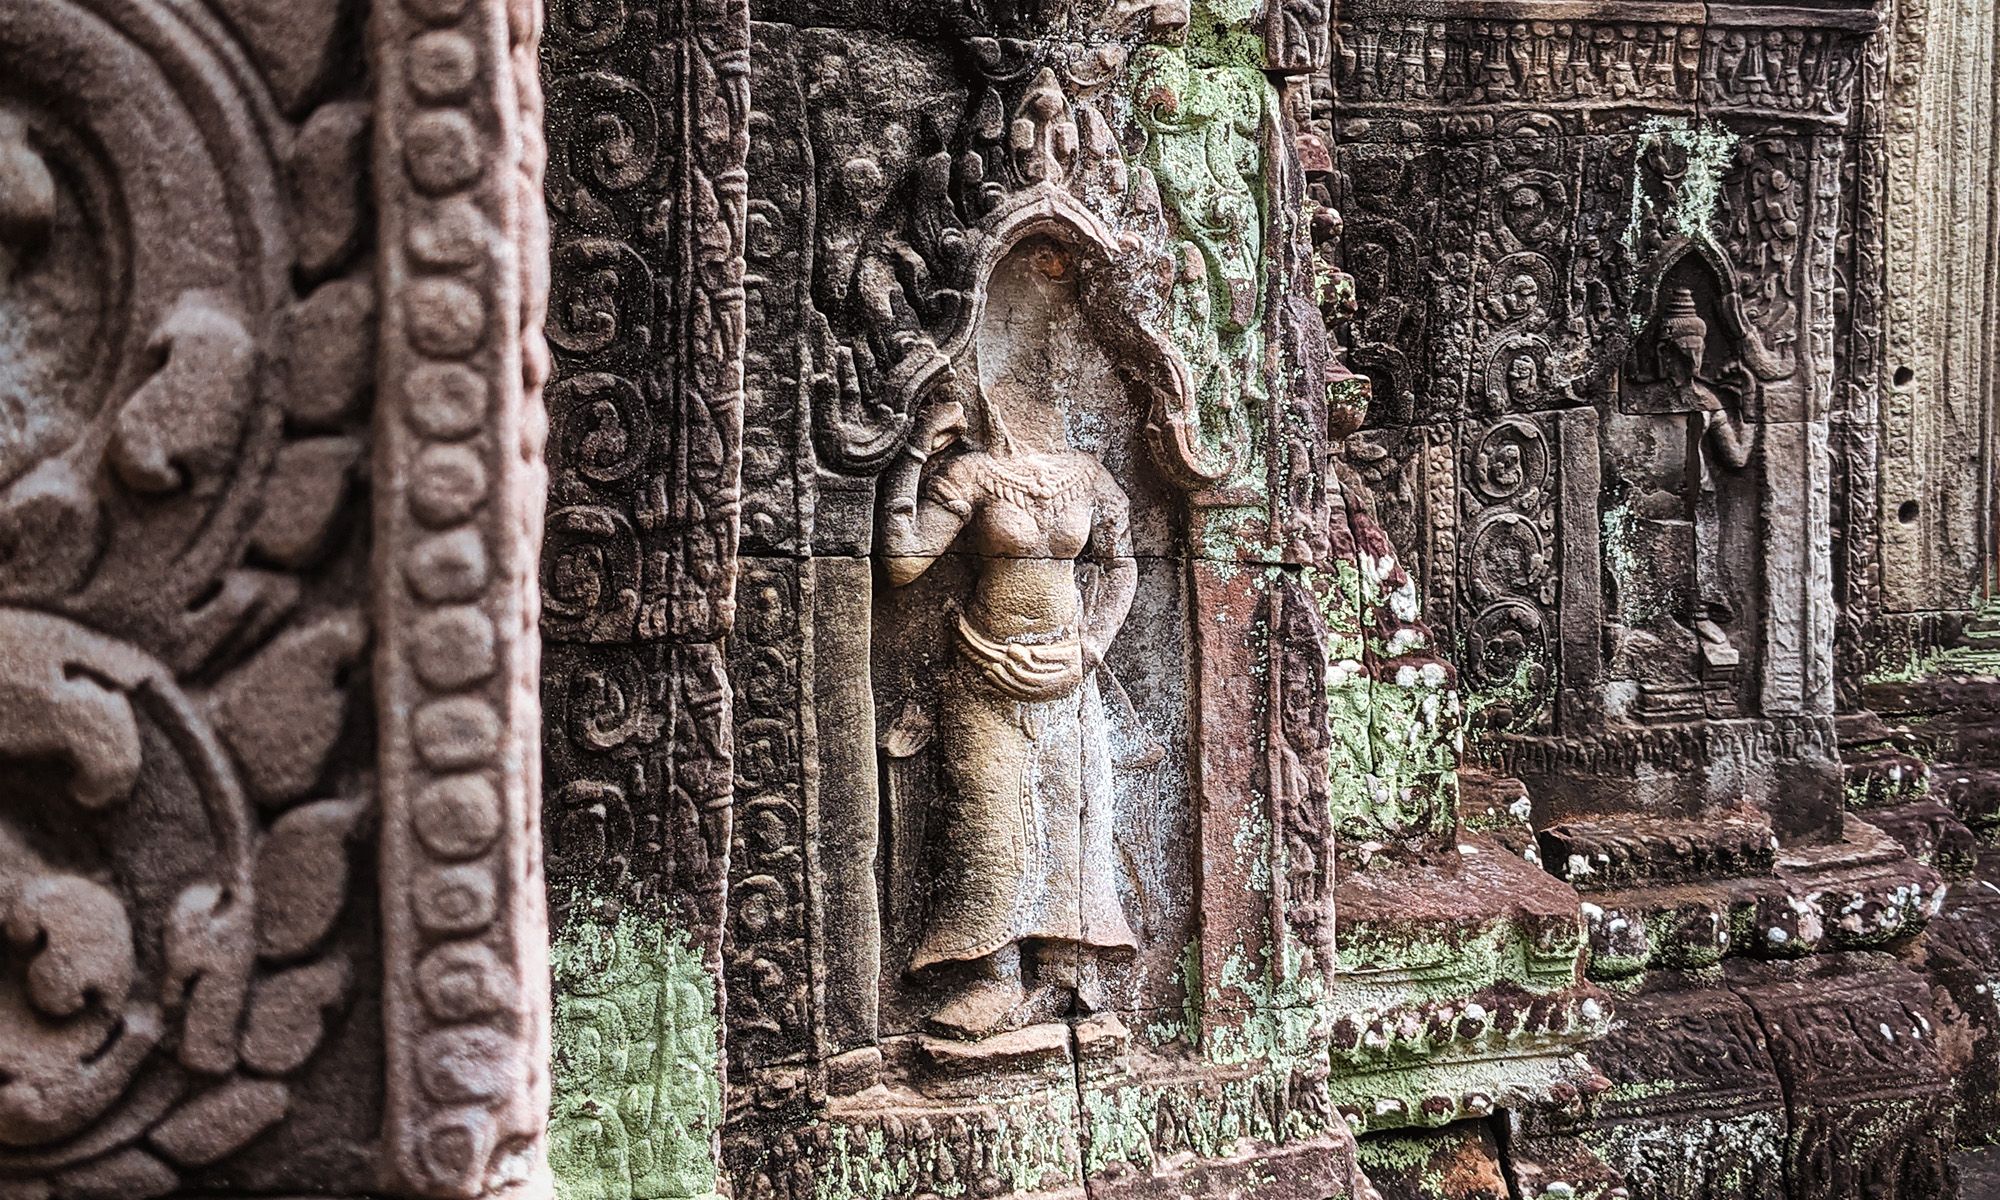 Apsara dancer carving in a temple in Angkor Wat